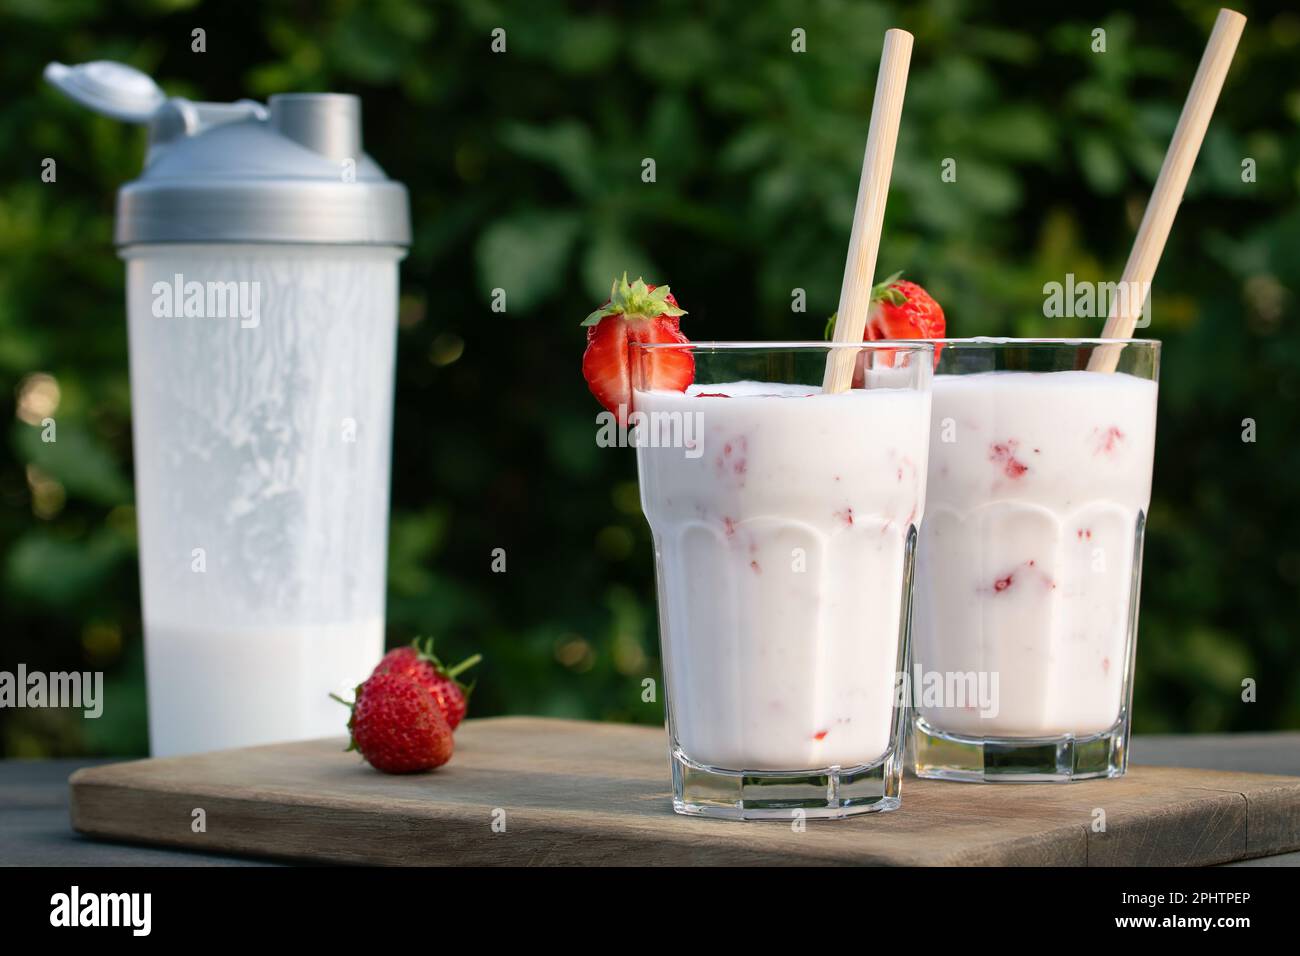 Proteinshake aus Joghurt und Erdbeeren in einem Schüttler und zwei Glasgläser auf einem Holztisch. Stockfoto